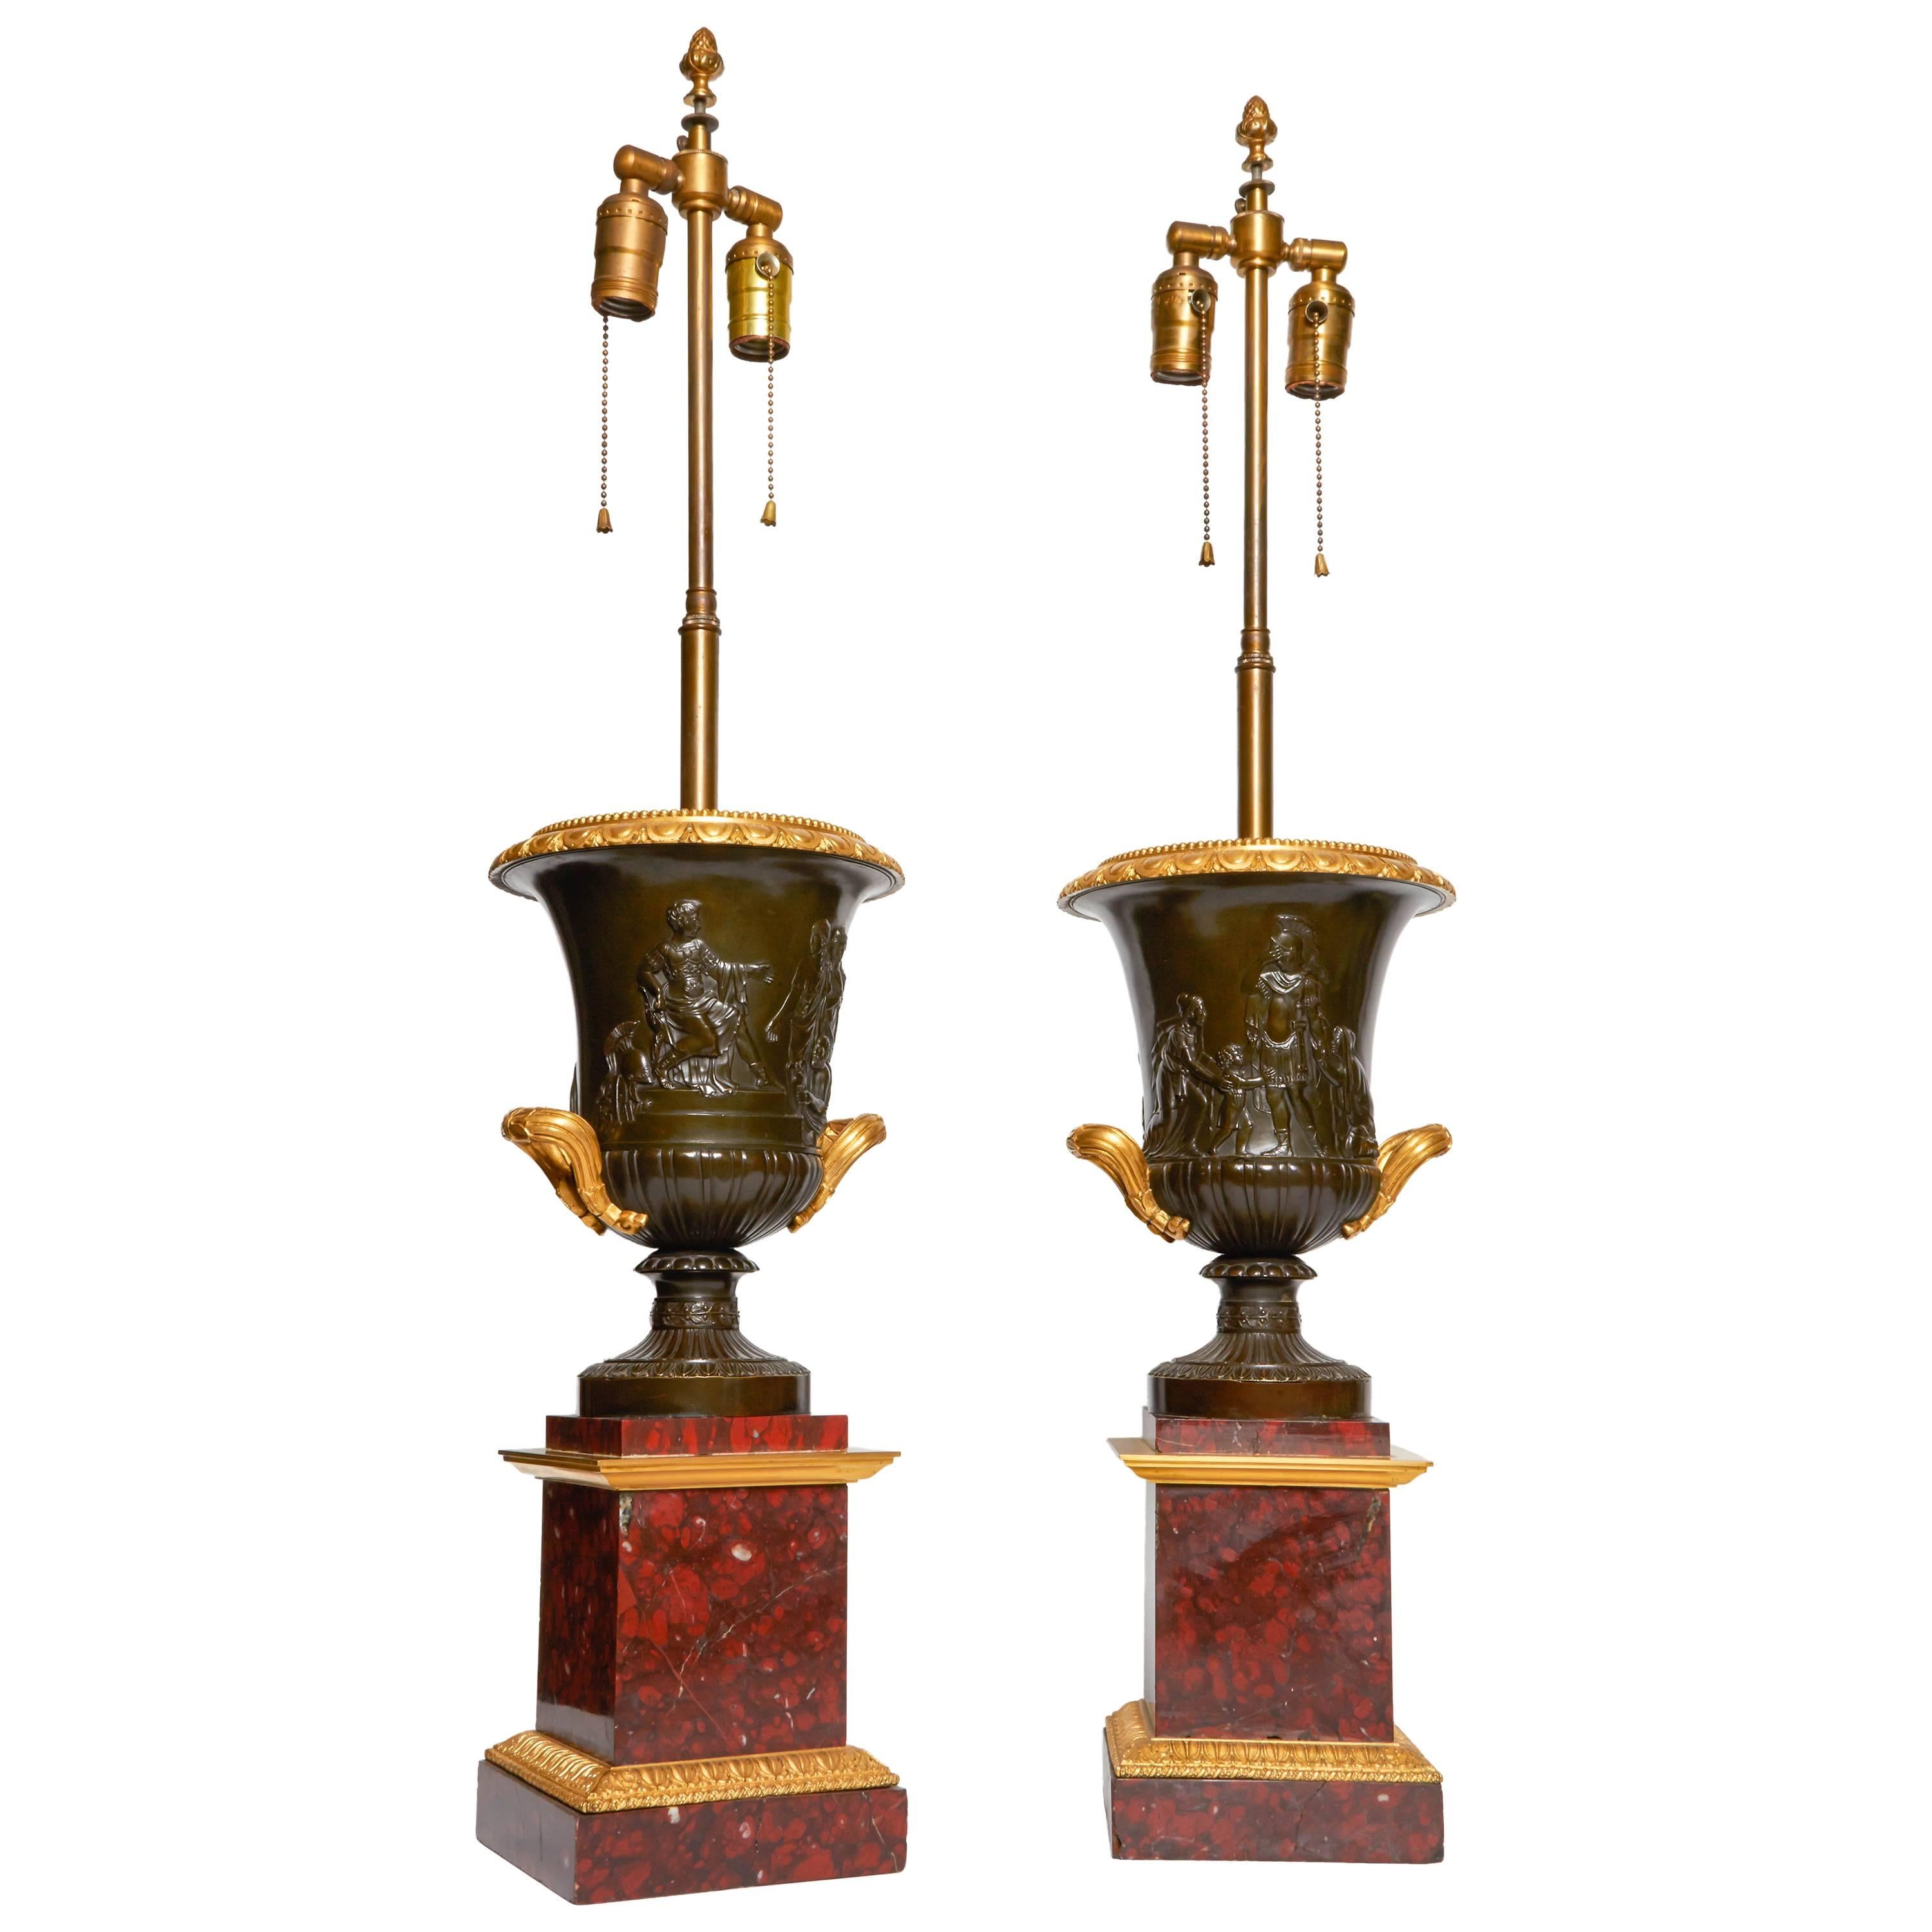 Paar antike neoklassizistische Urnen oder Lampen aus Bronze in Campagna-Form, großformatig